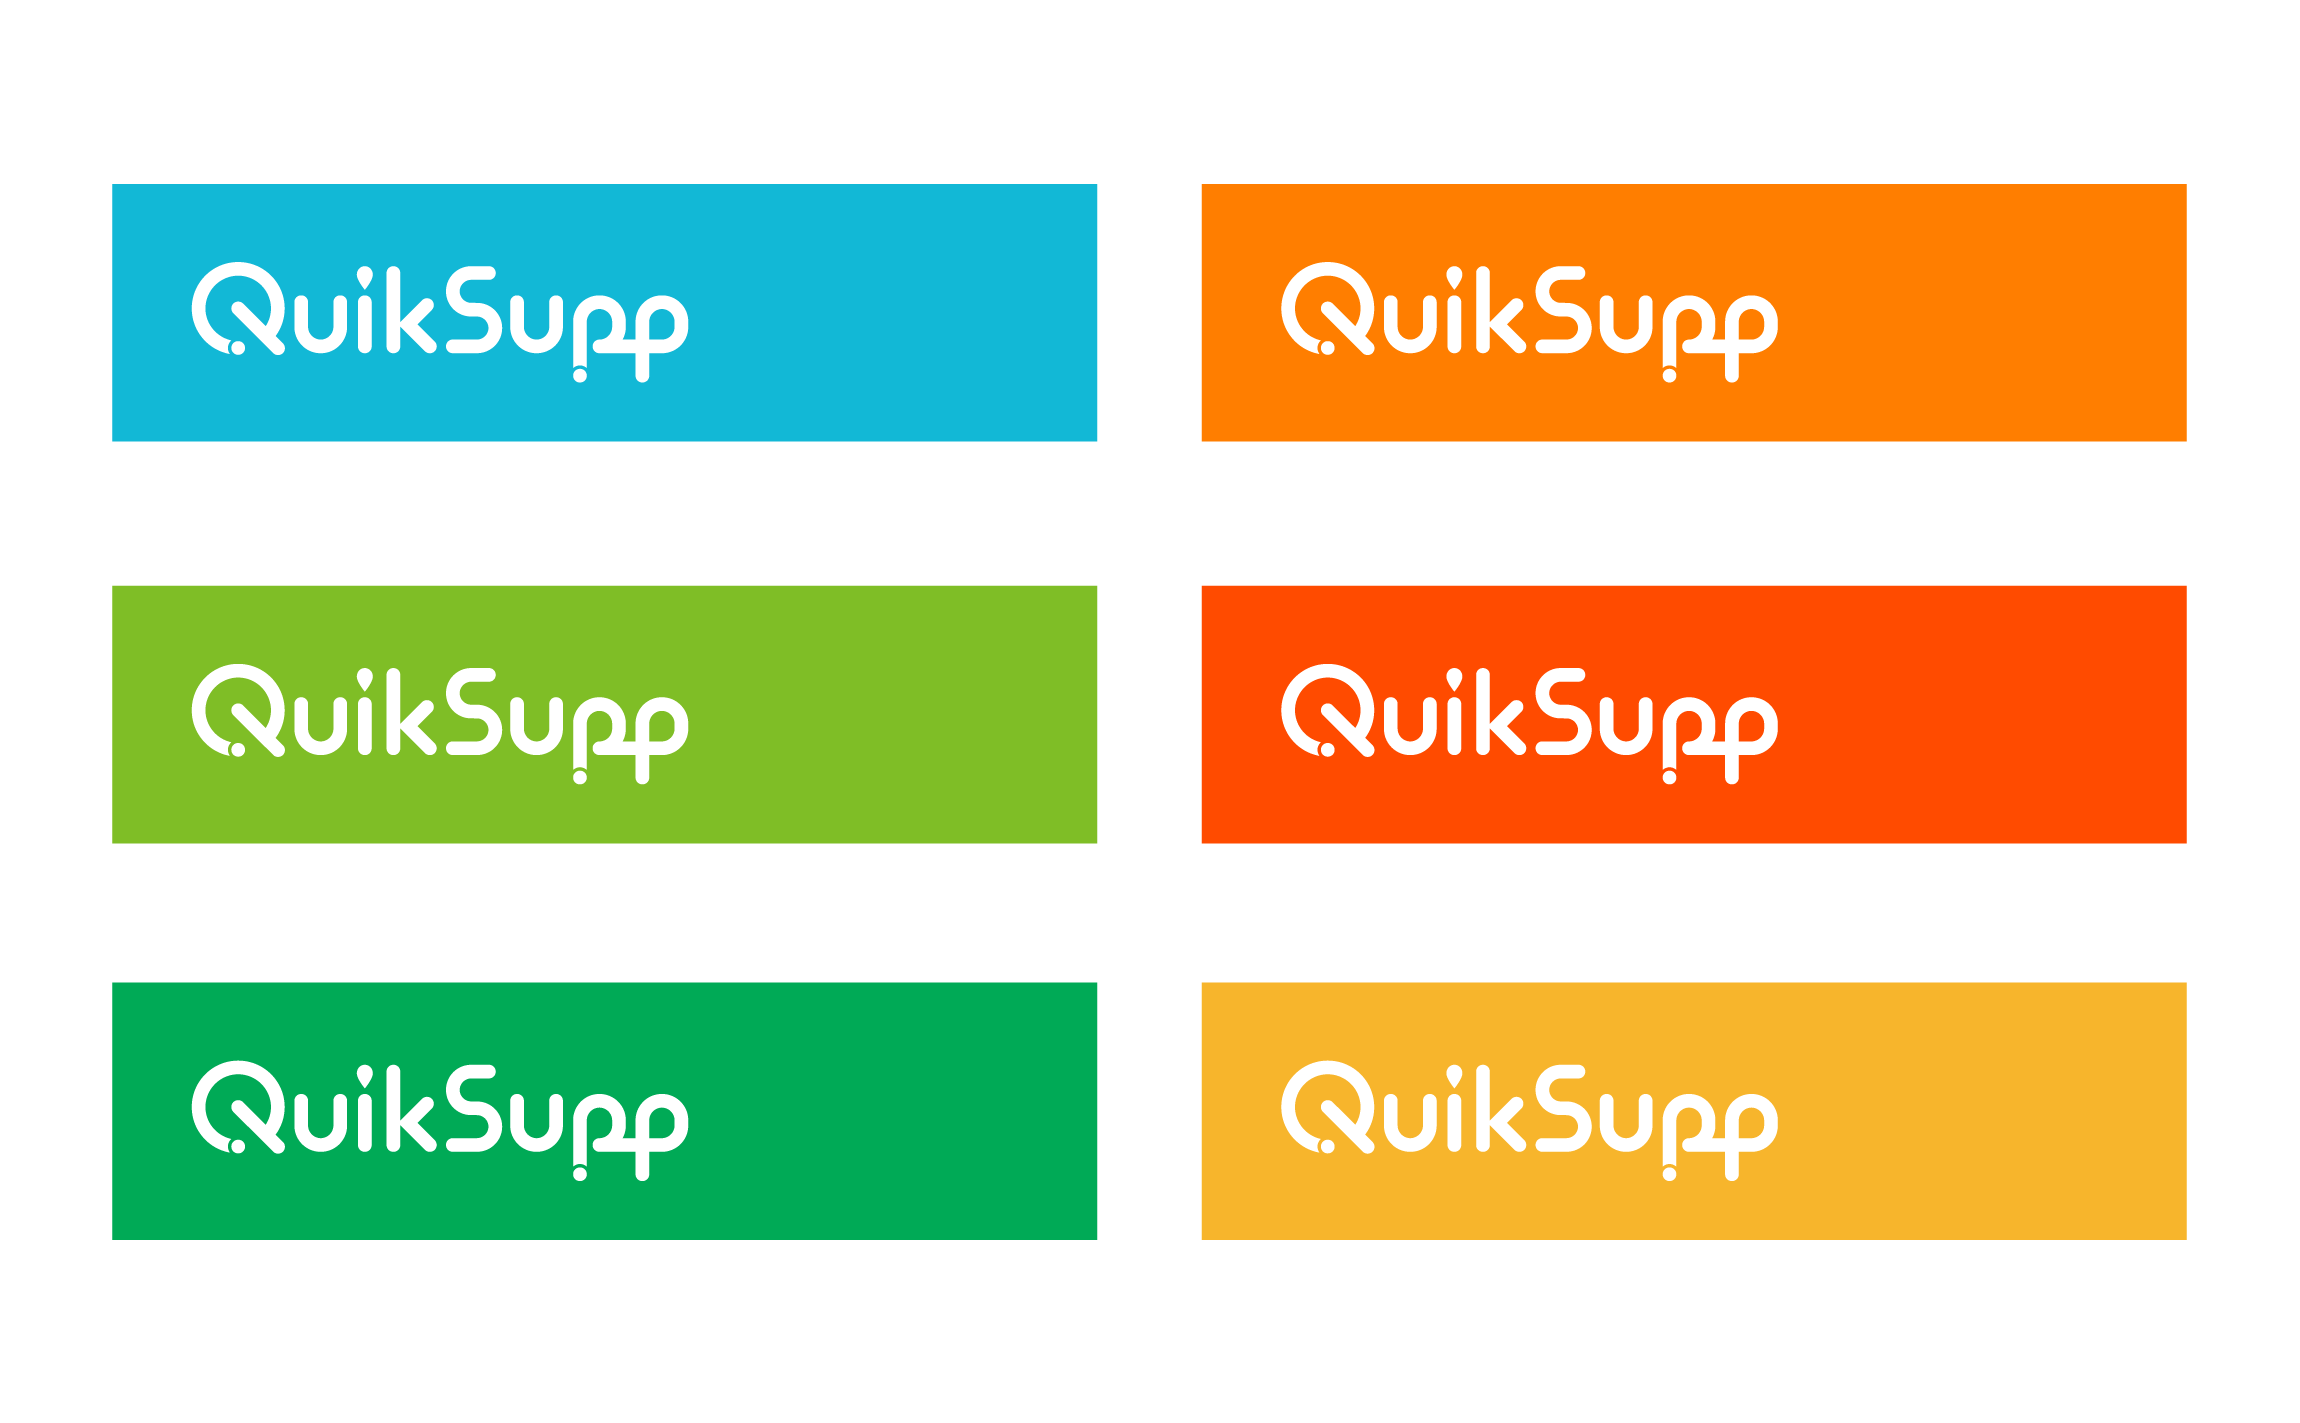 QuikSupp Logo Design Quiksupp Branding & Identity quiksupp-3.png